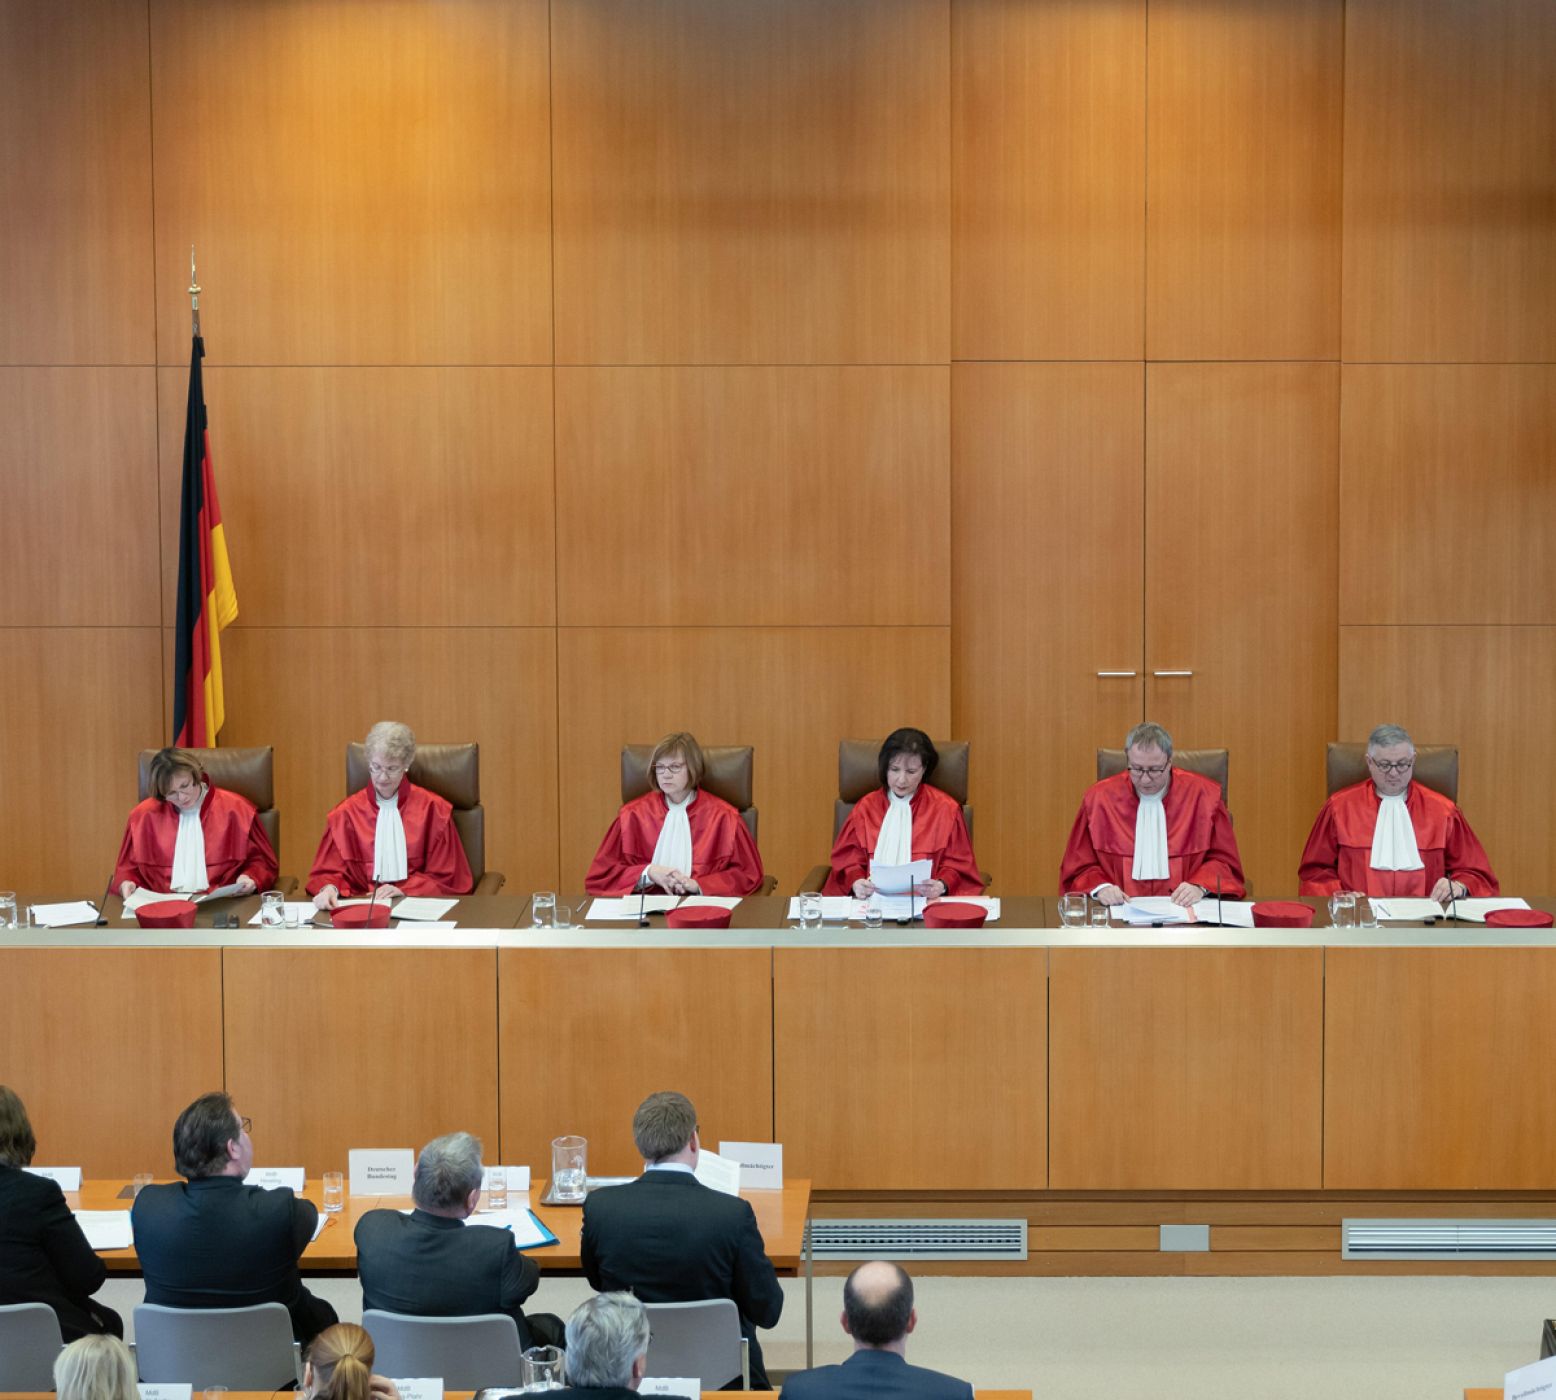 Las penas por llevar a cabo la eutanasia no son constitucionales según la Justicia alemana